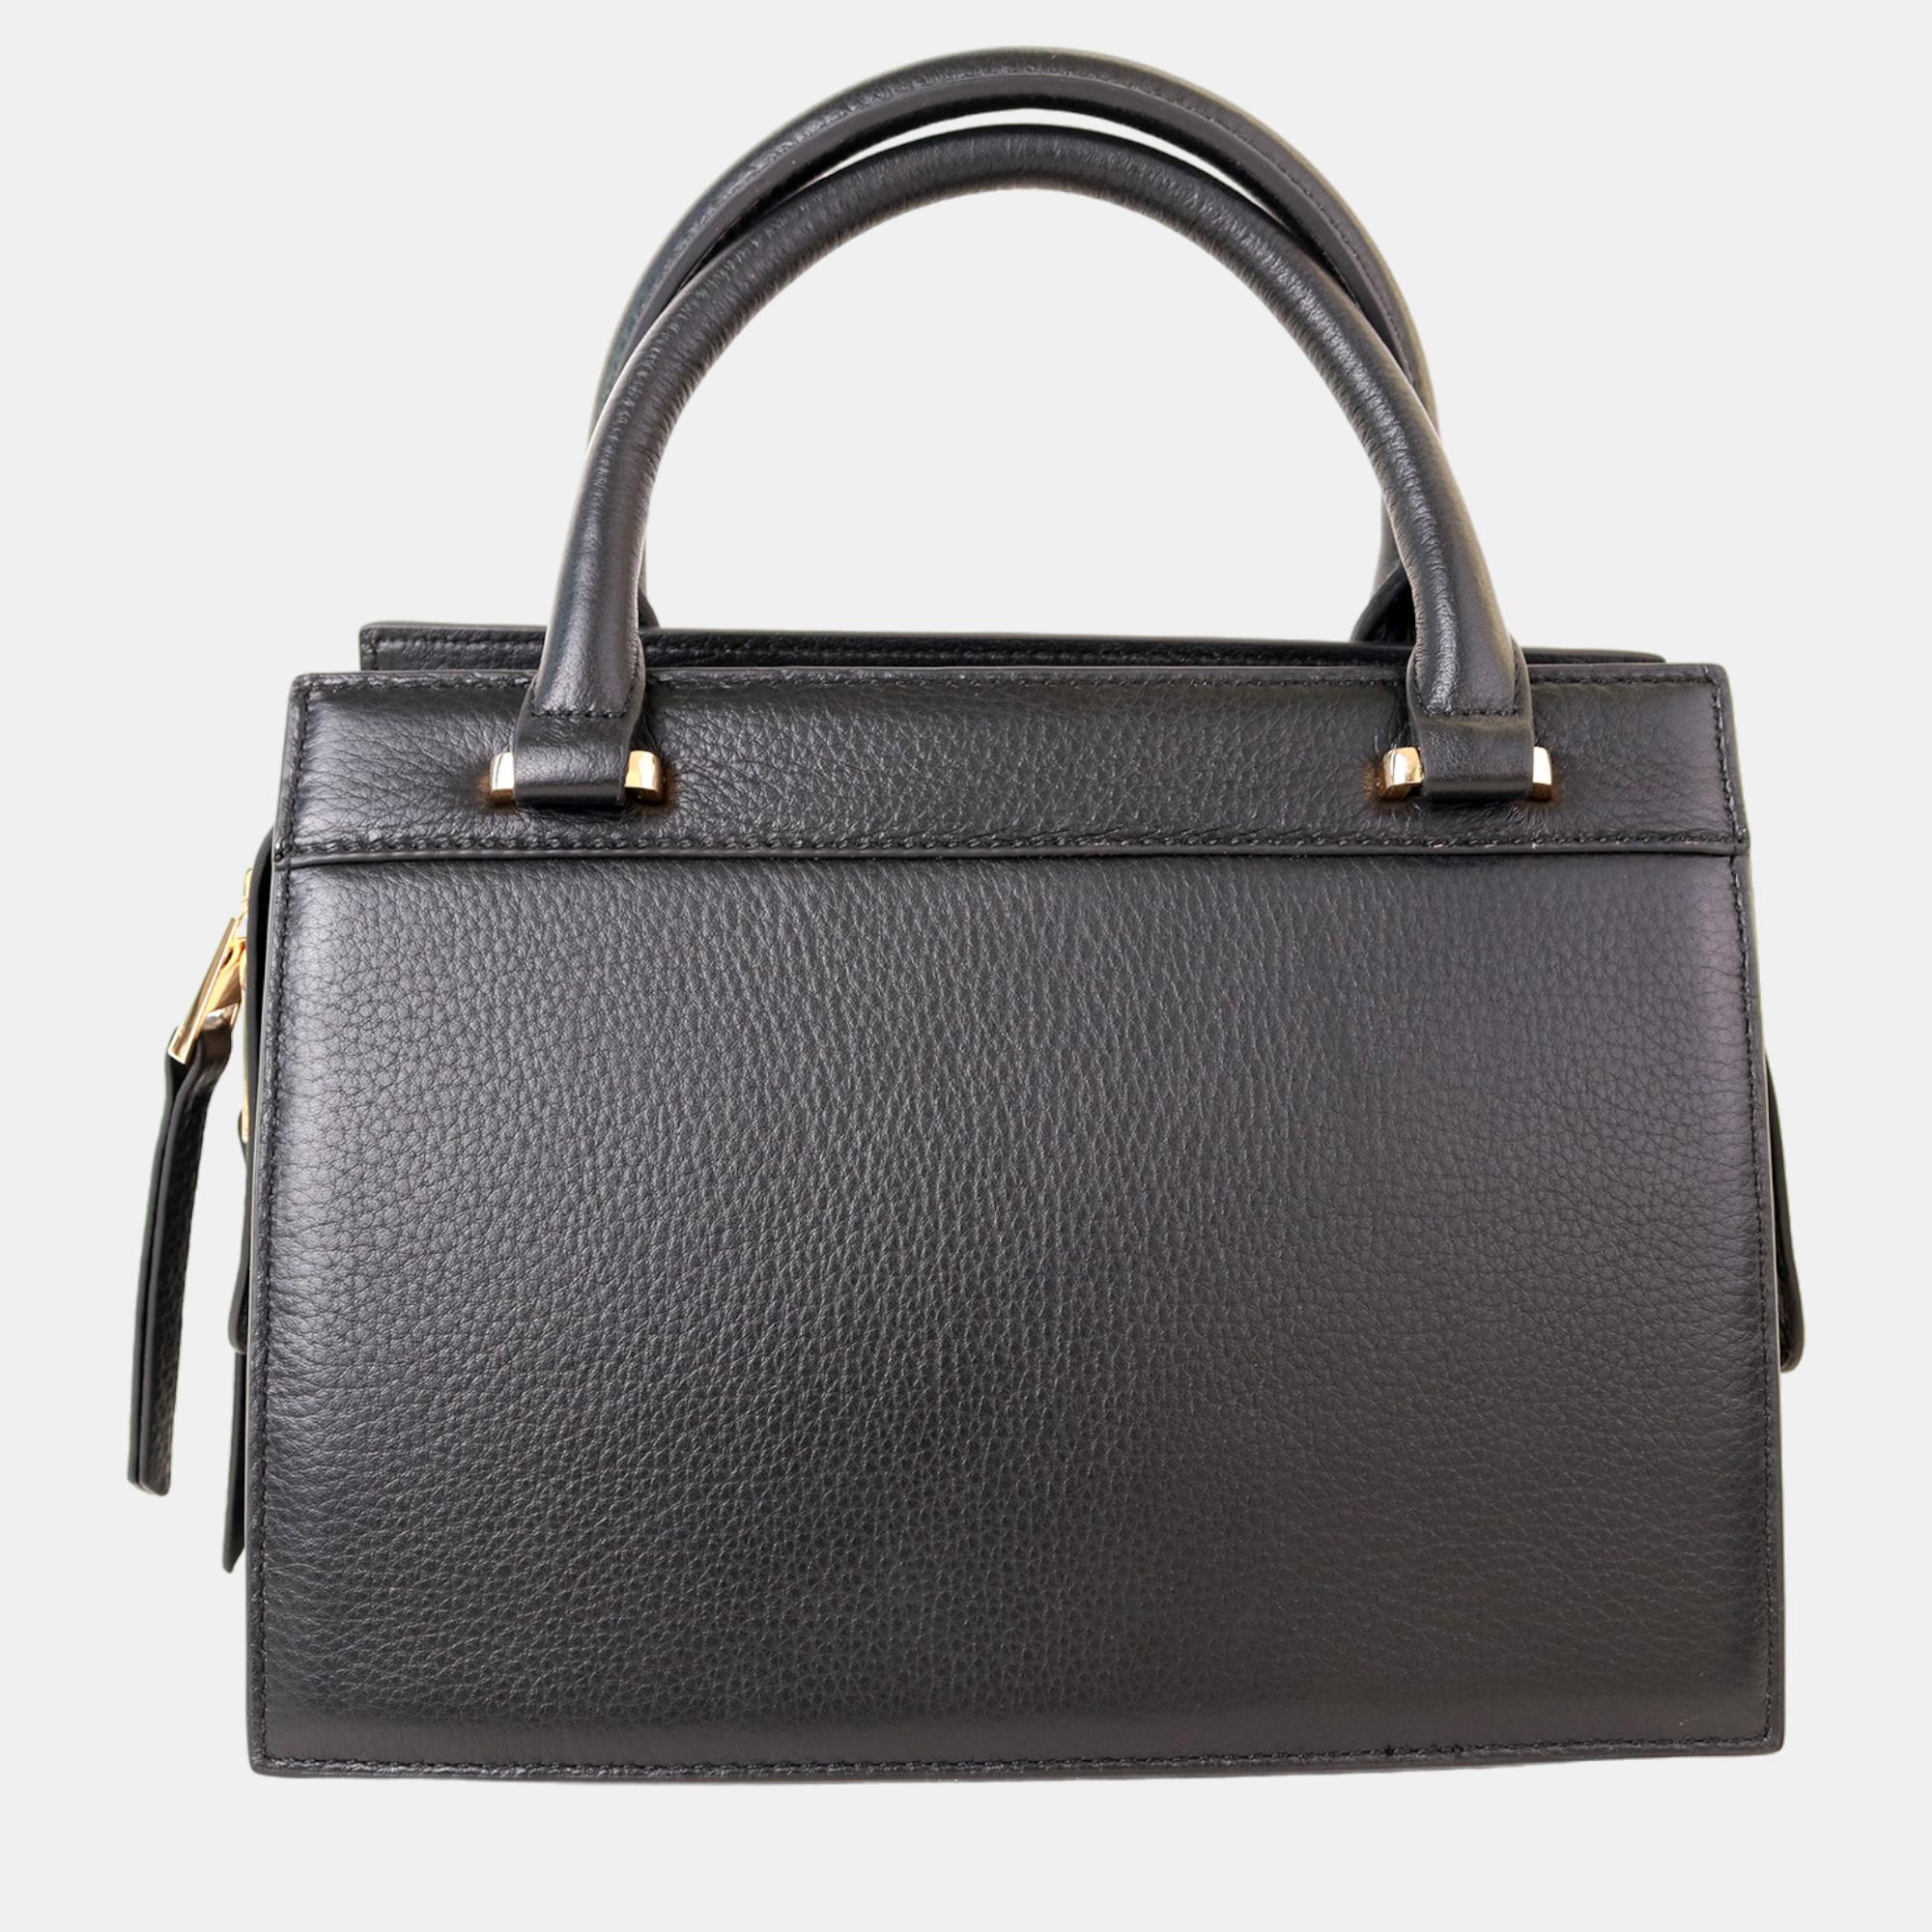 Charriol Black Leather Forever Handbag